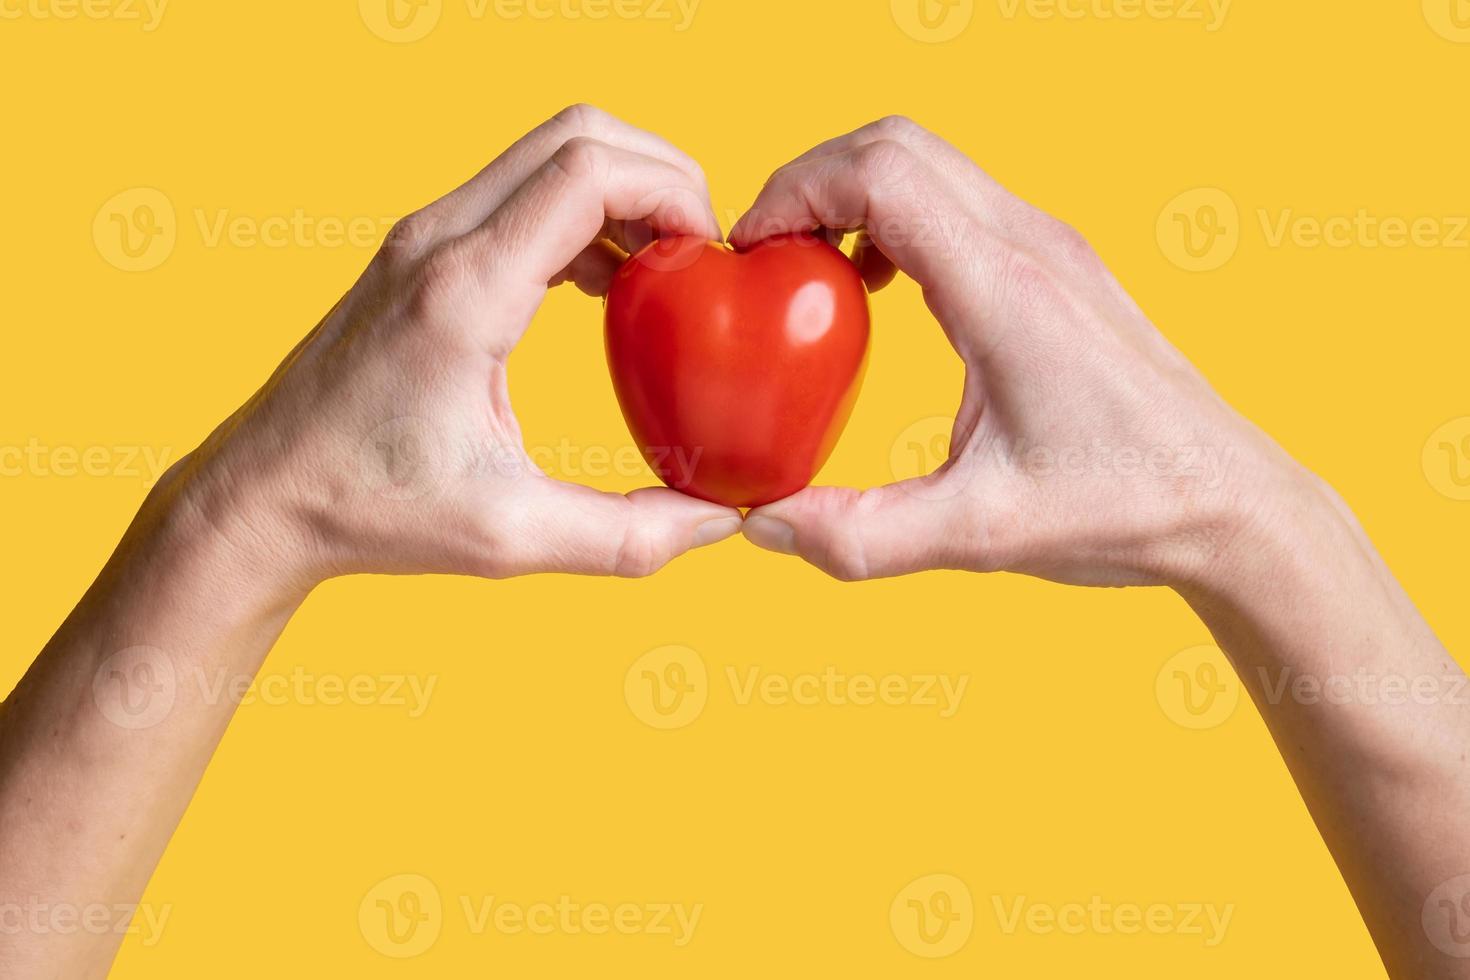 tomate rojo en forma de corazón, símbolo de amor en las manos, sobre un fondo amarillo. concepto de comida saludable. día de San Valentín. vista superior. foto